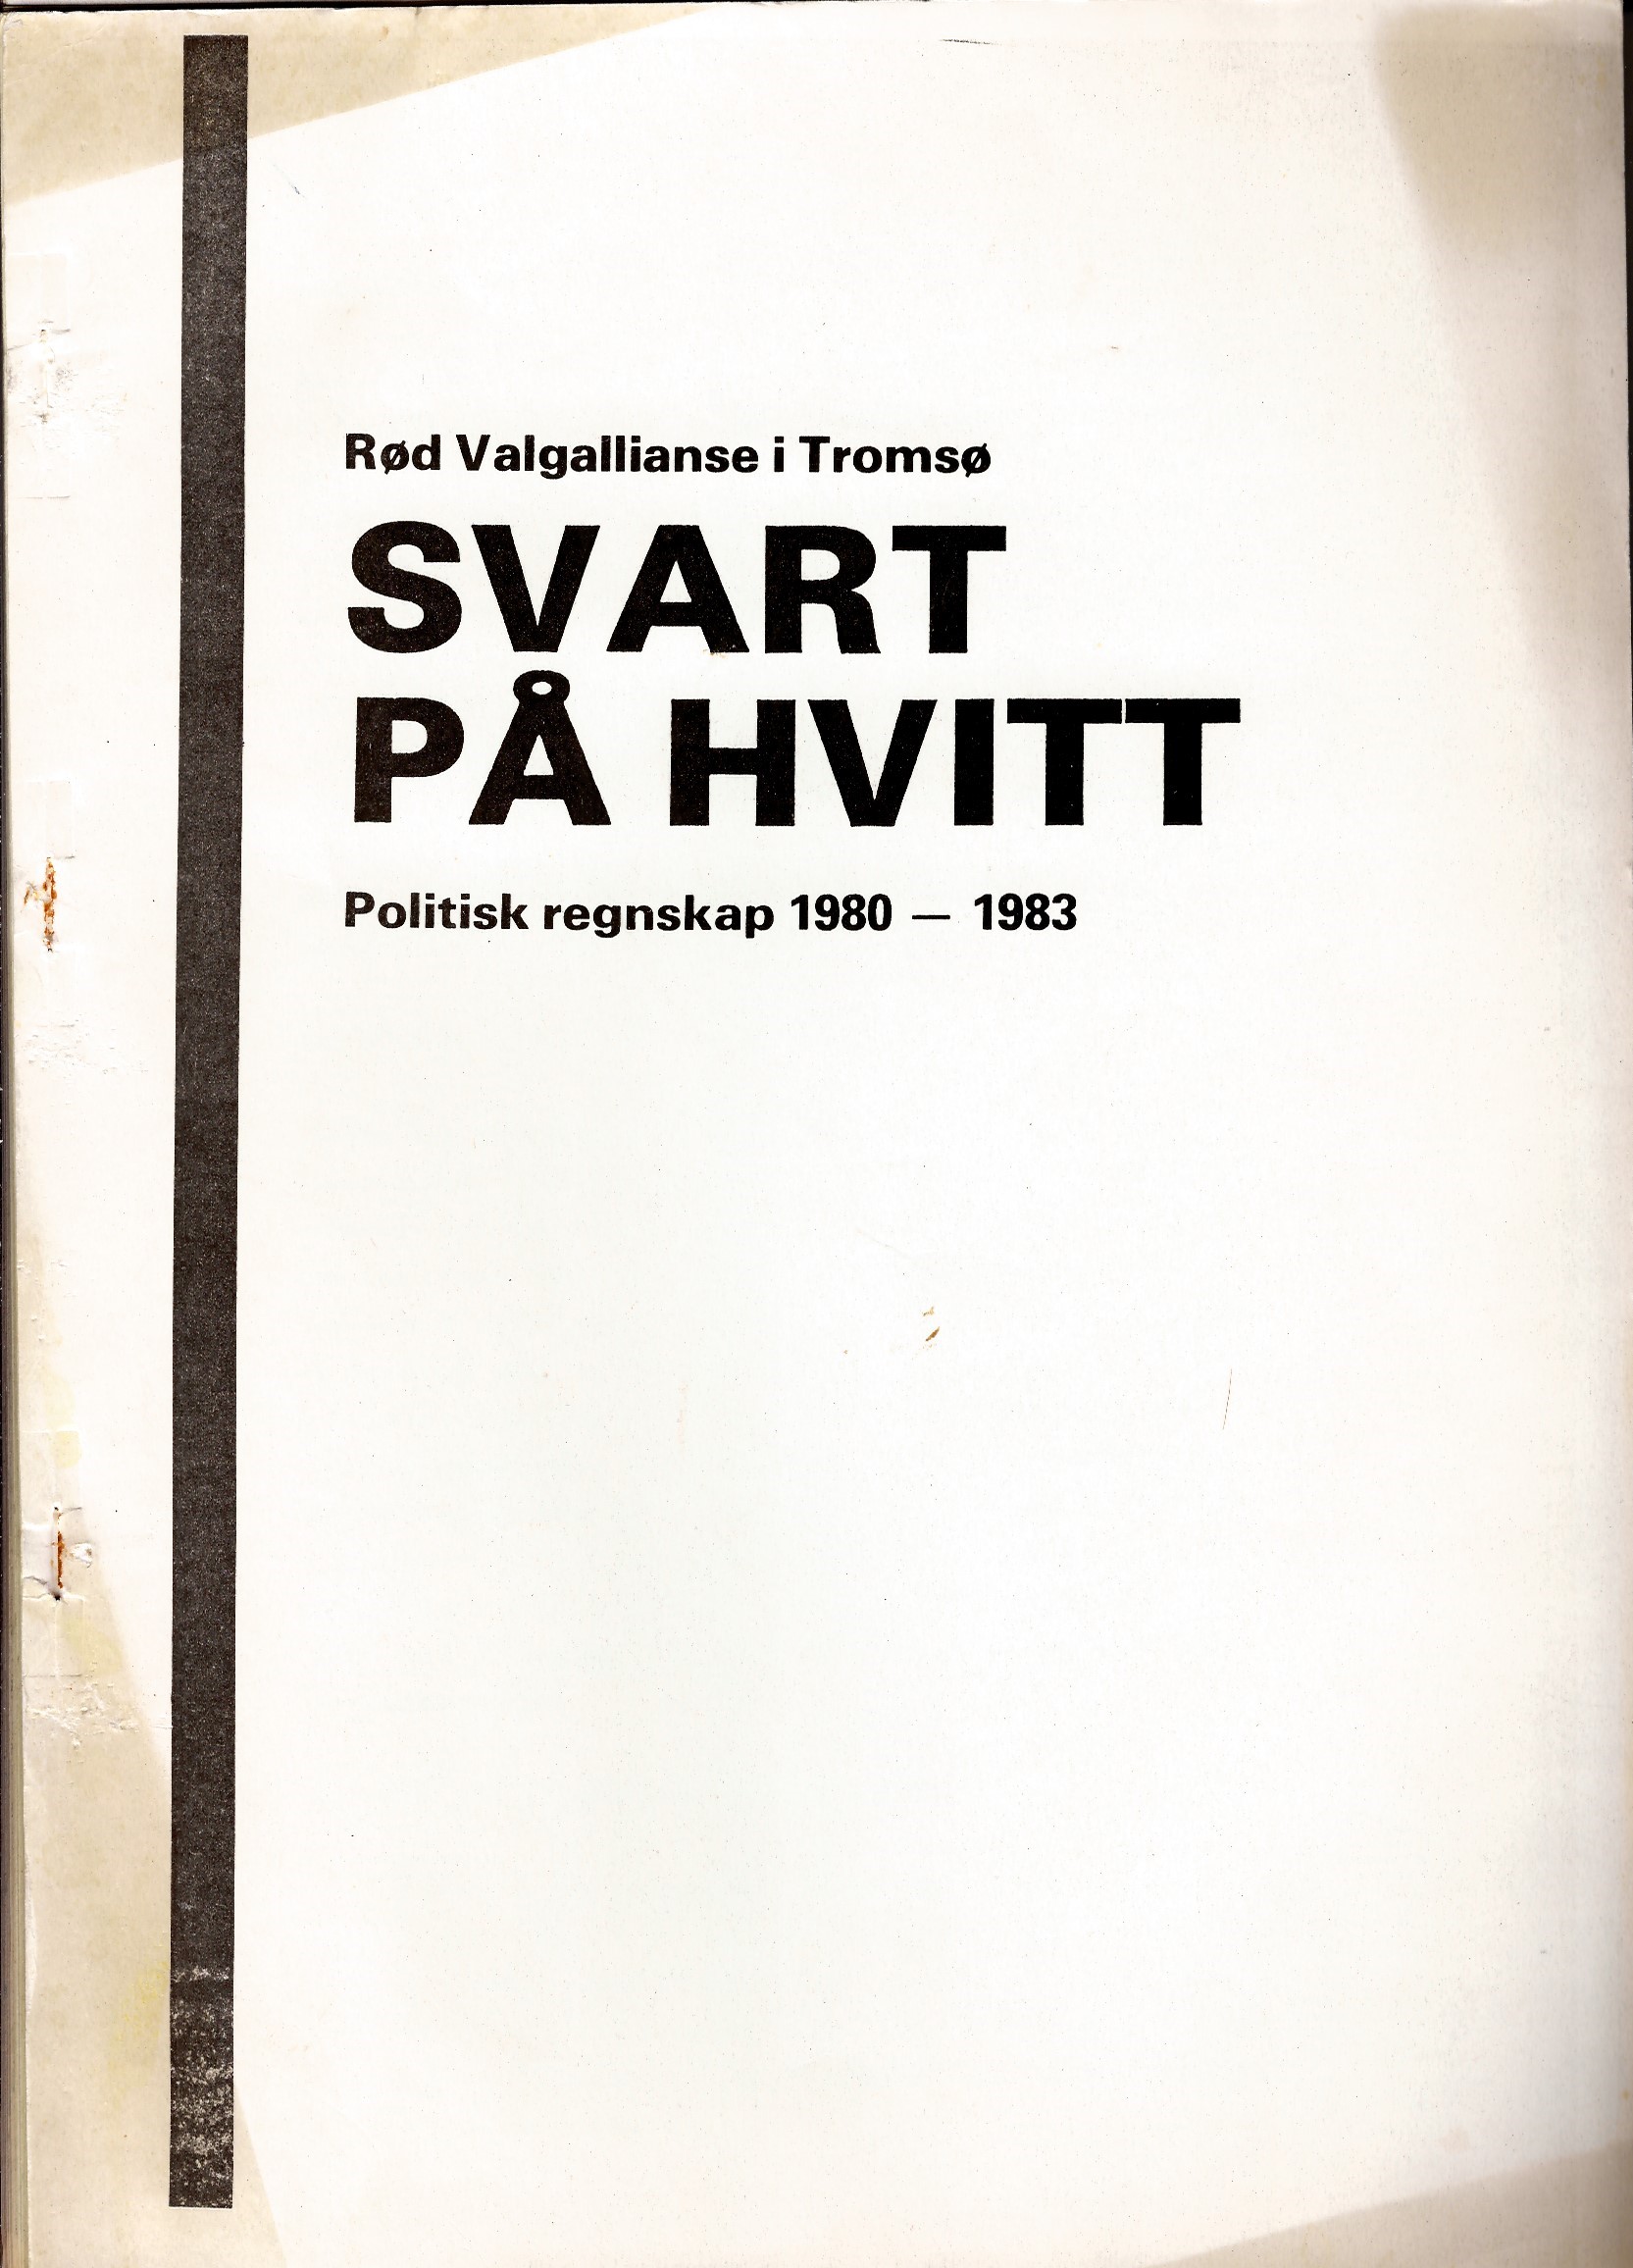 Svart på hvitt. Politisk regnskap 1980-1983 RV i Tromsø